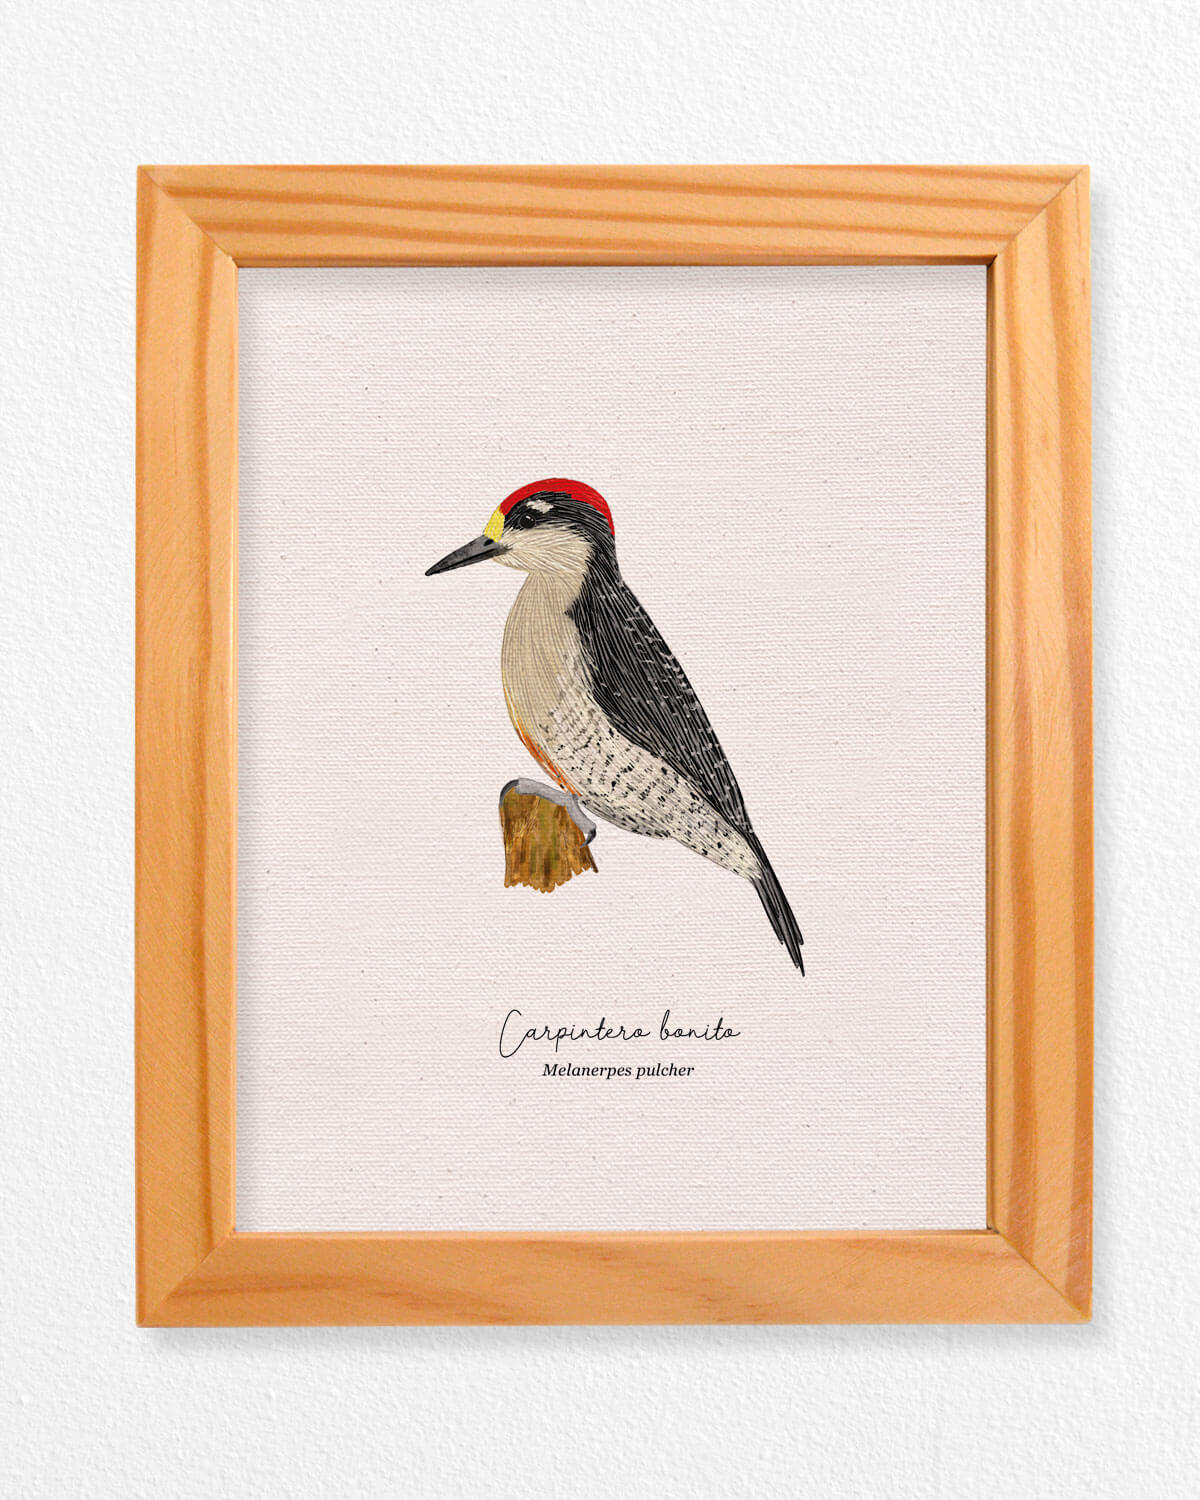 Carpintero ave colombia aves de colombia cuadros regalos souvenirs colombianos Colombia arte artesanías mapas postales decoracion